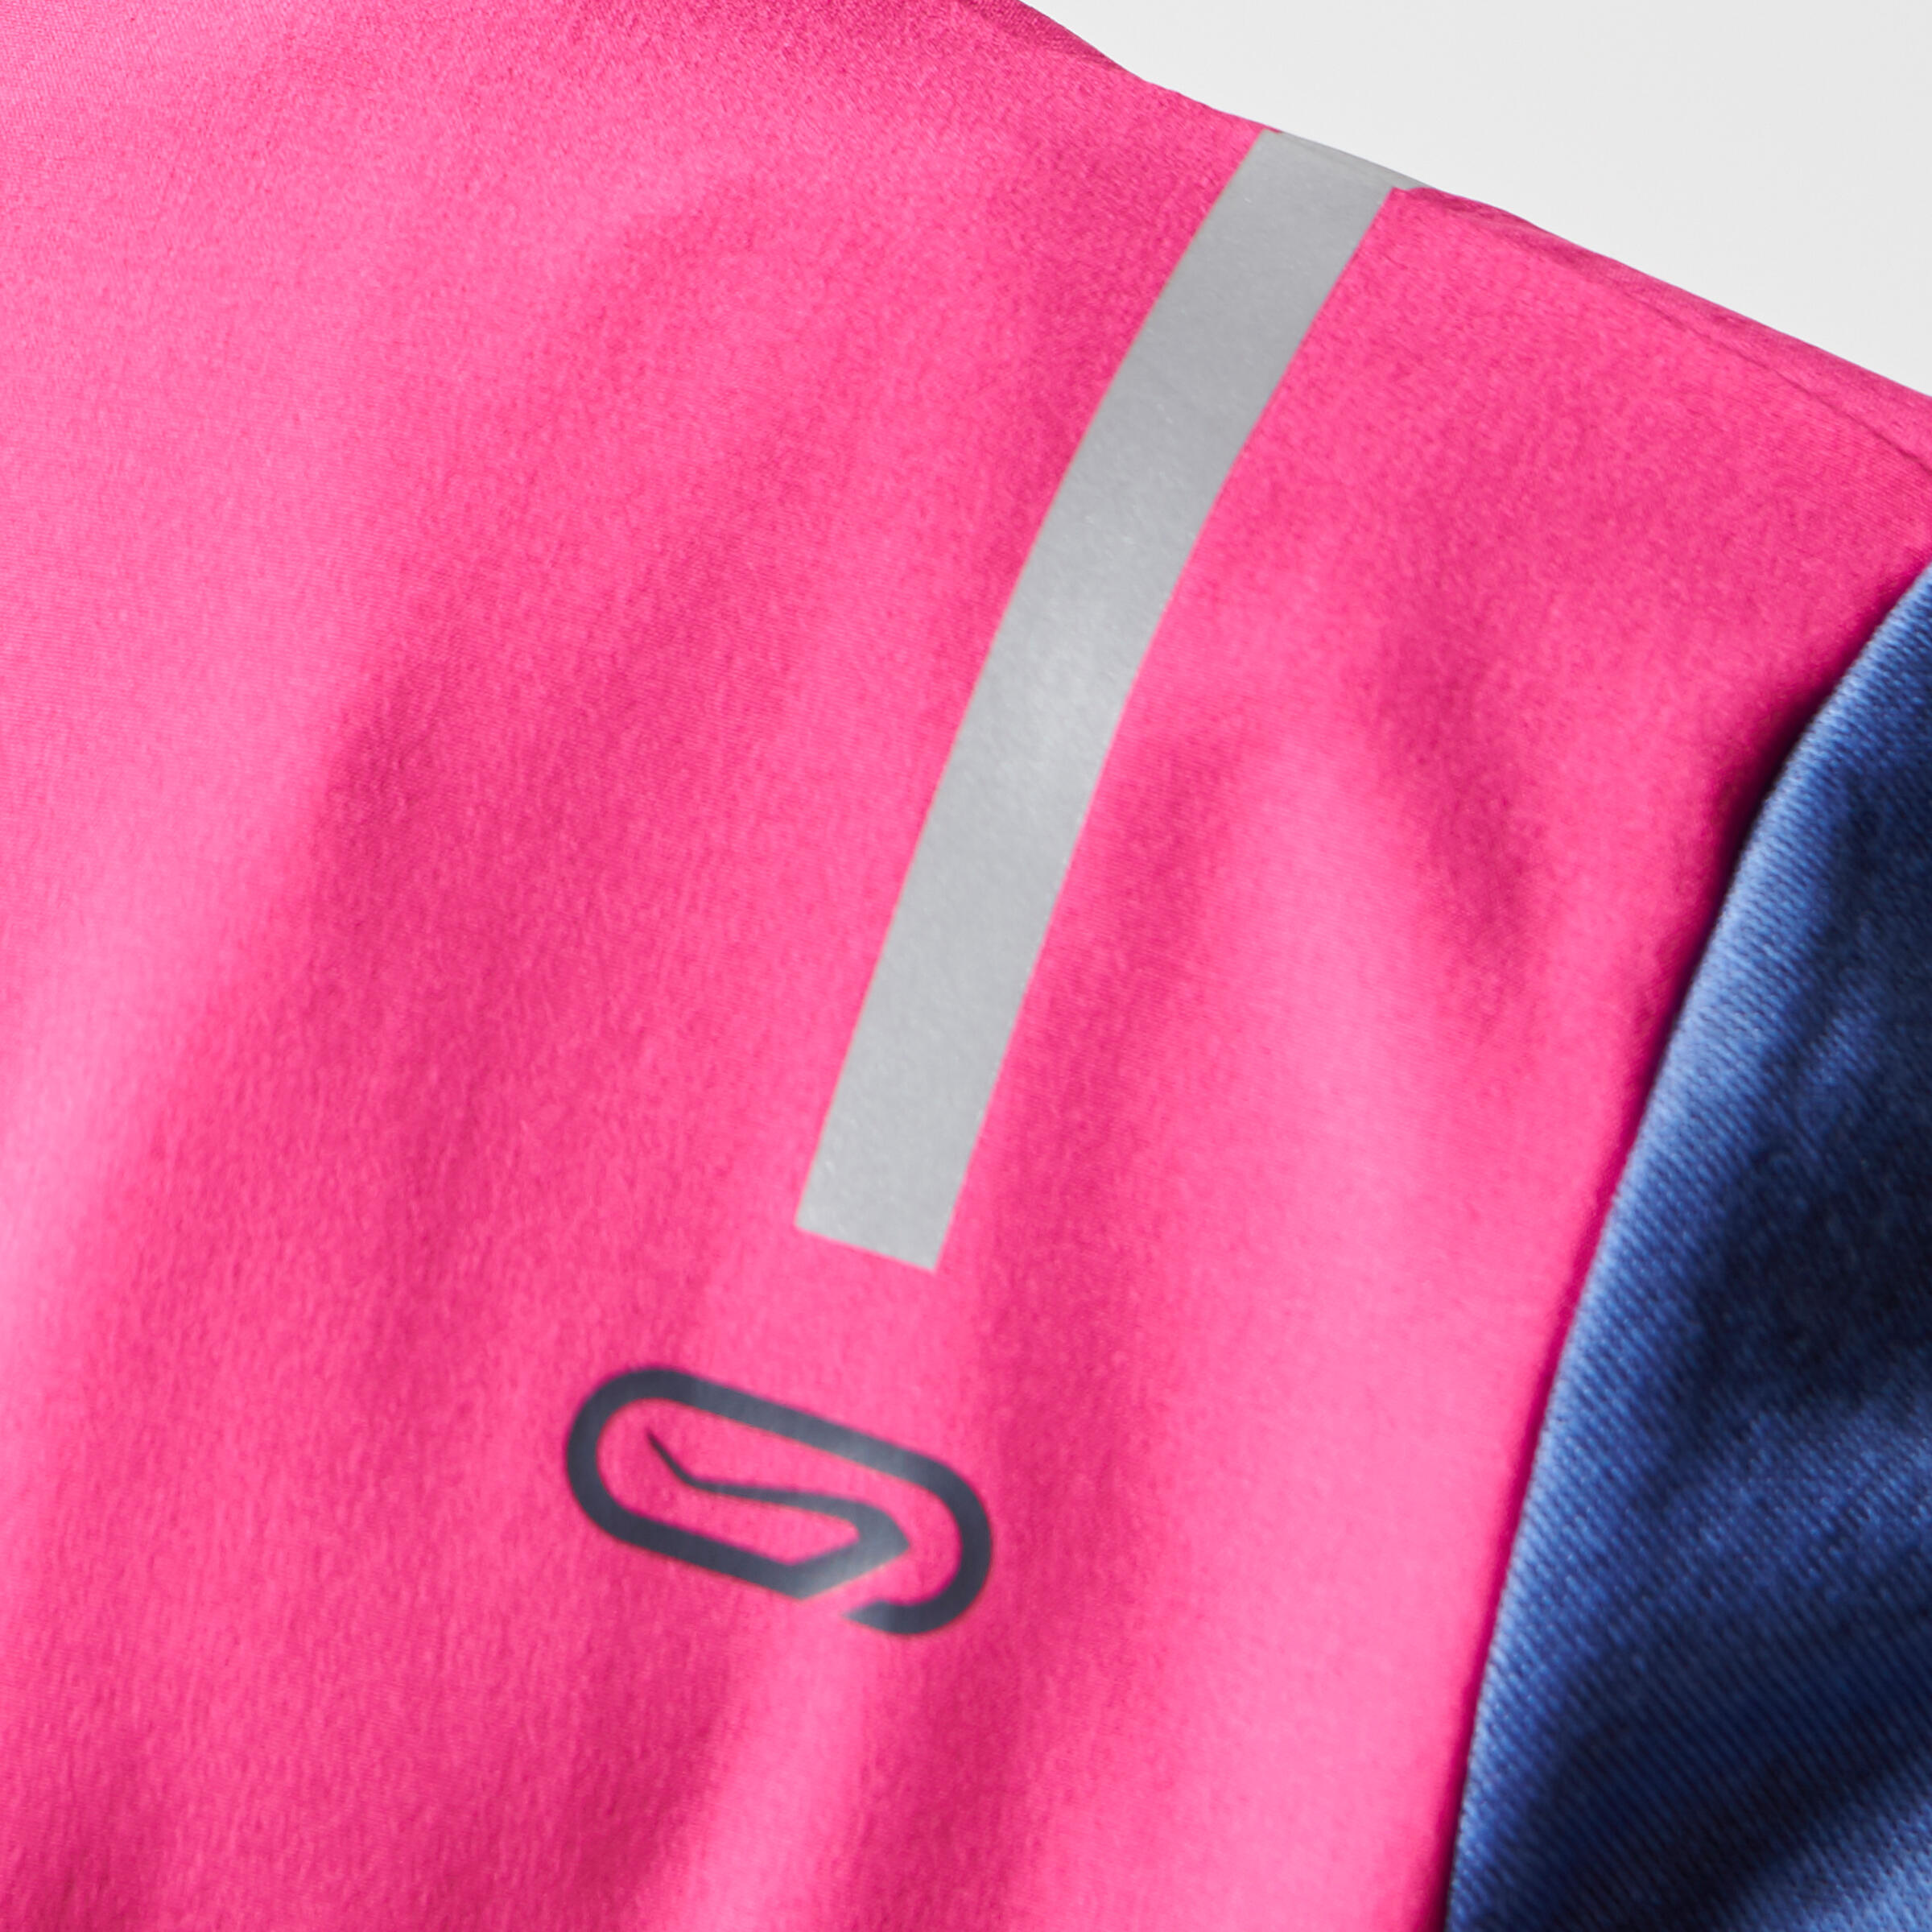 Elio Children's Running Hooded Jersey - Pink/Blue
 14/16